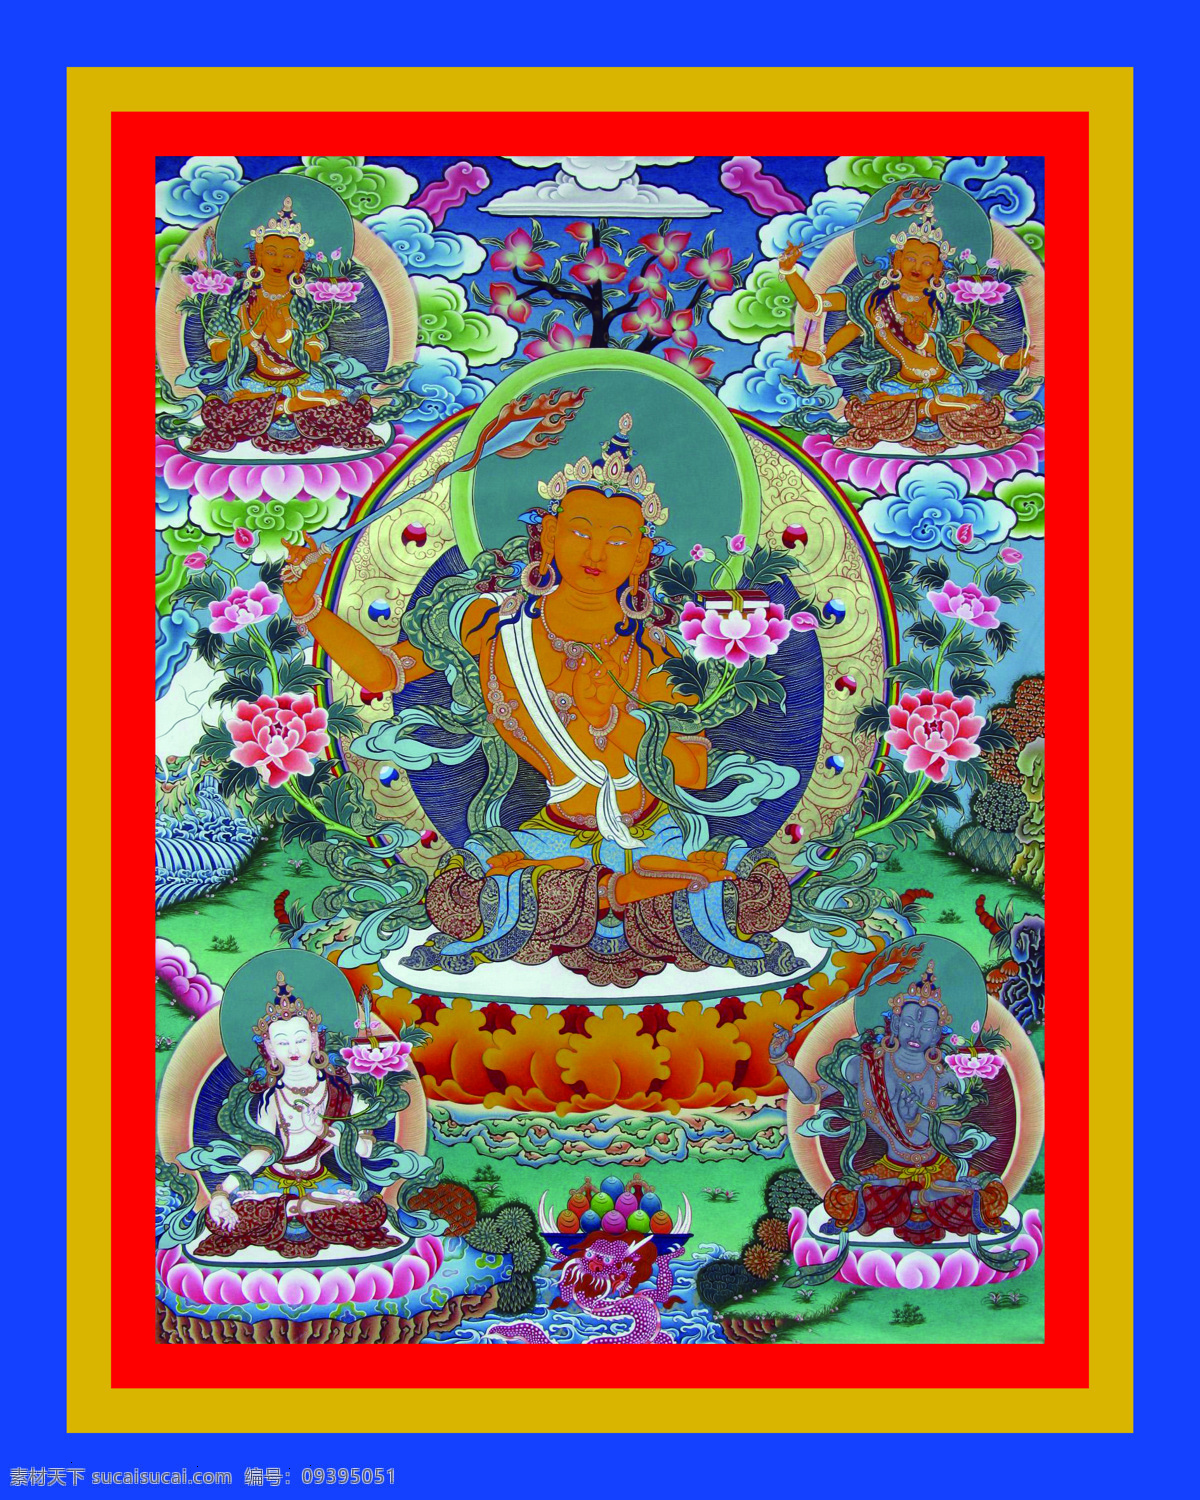 成就 传承 佛 佛教 菩萨 唐卡 文化艺术 西藏 五文殊 老唐卡 藏传 密宗 法器 成就者 大德 喇嘛 活佛 宗教信仰